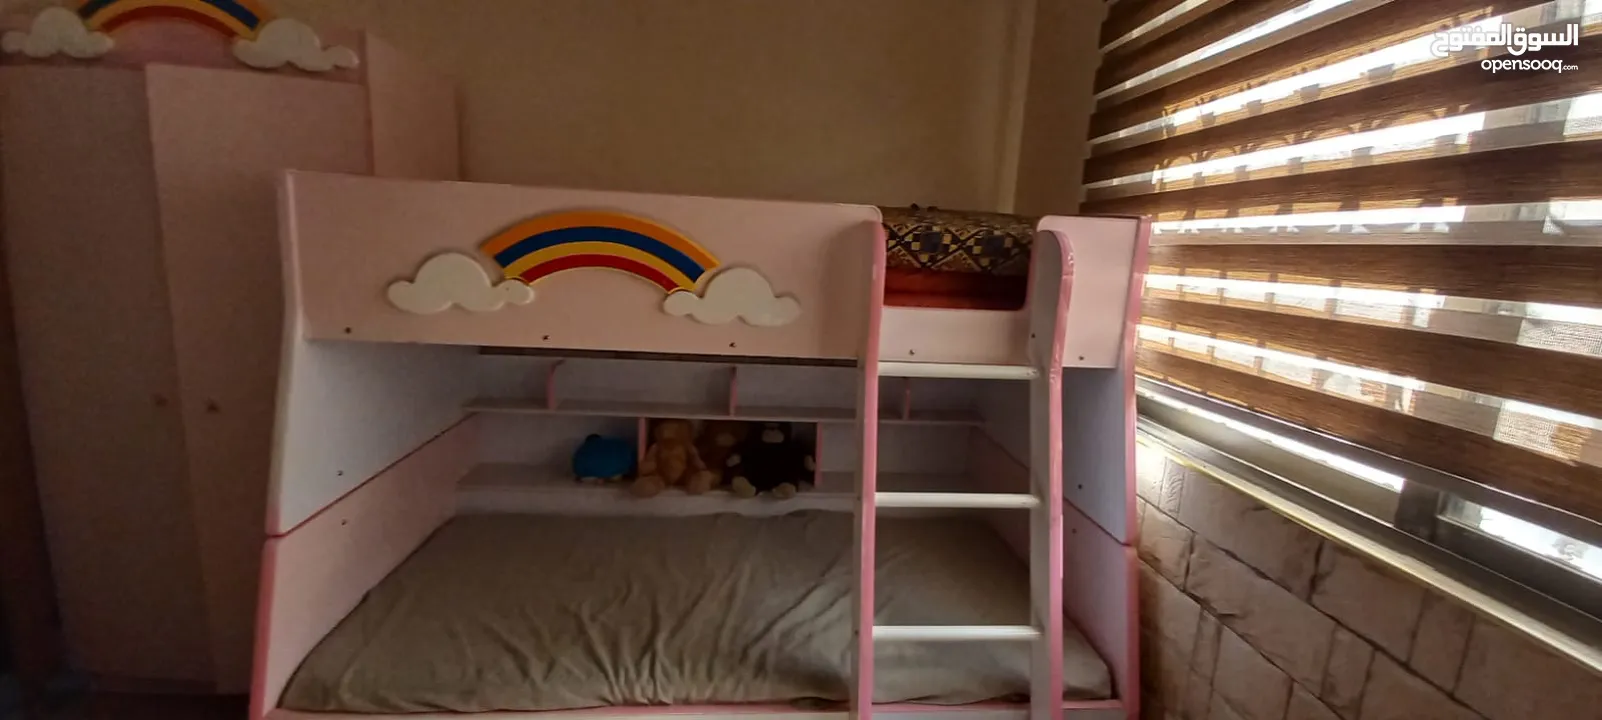 غرفة نوم اطفال طابقين للبيع